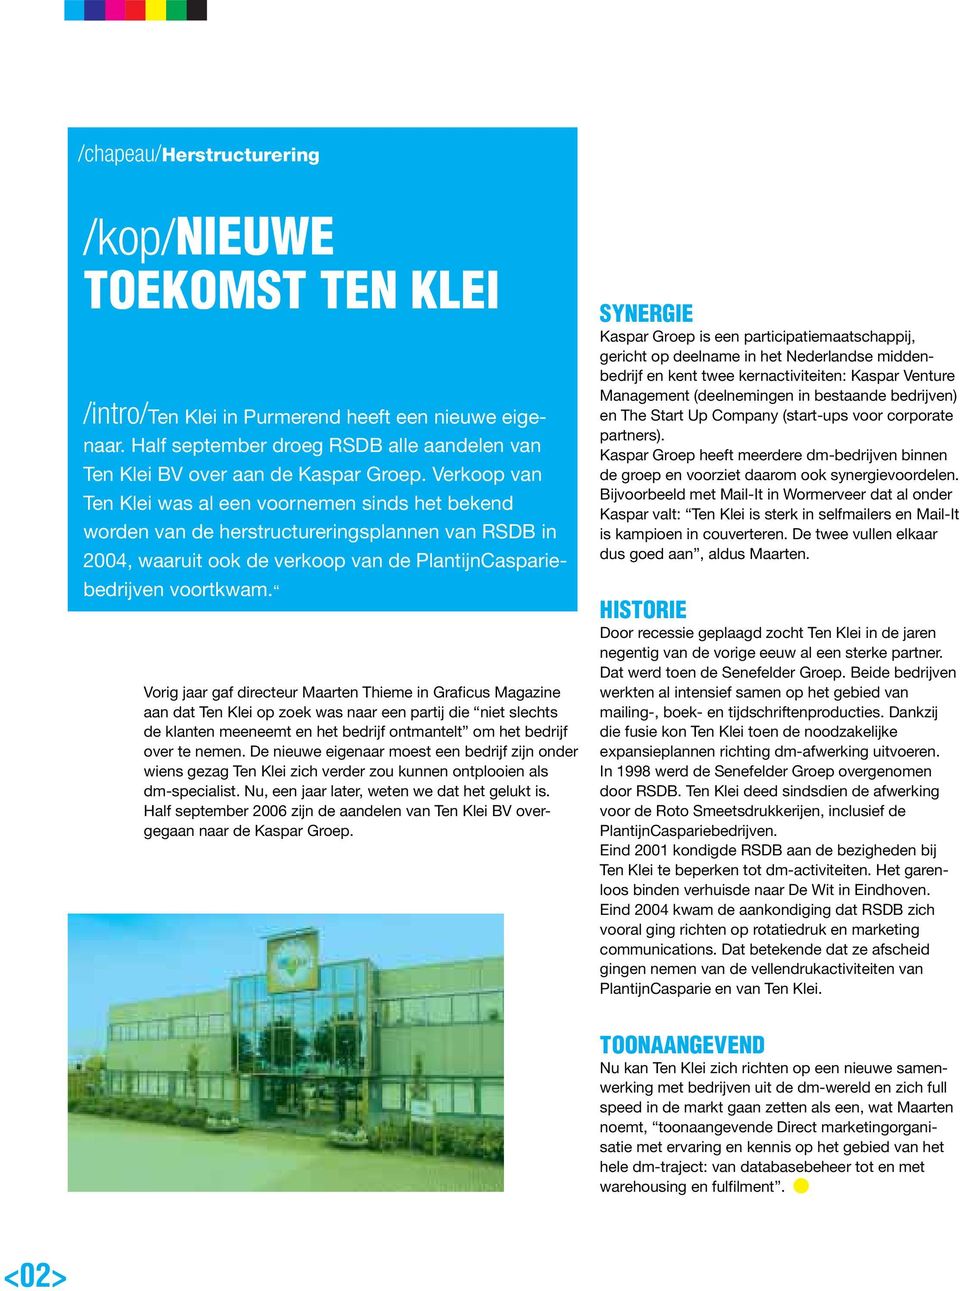 Vorig jaar gaf directeur Maarten Thieme in Graficus Magazine aan dat Ten Klei op zoek was naar een partij die niet slechts de klanten meeneemt en het bedrijf ontmantelt om het bedrijf over te nemen.